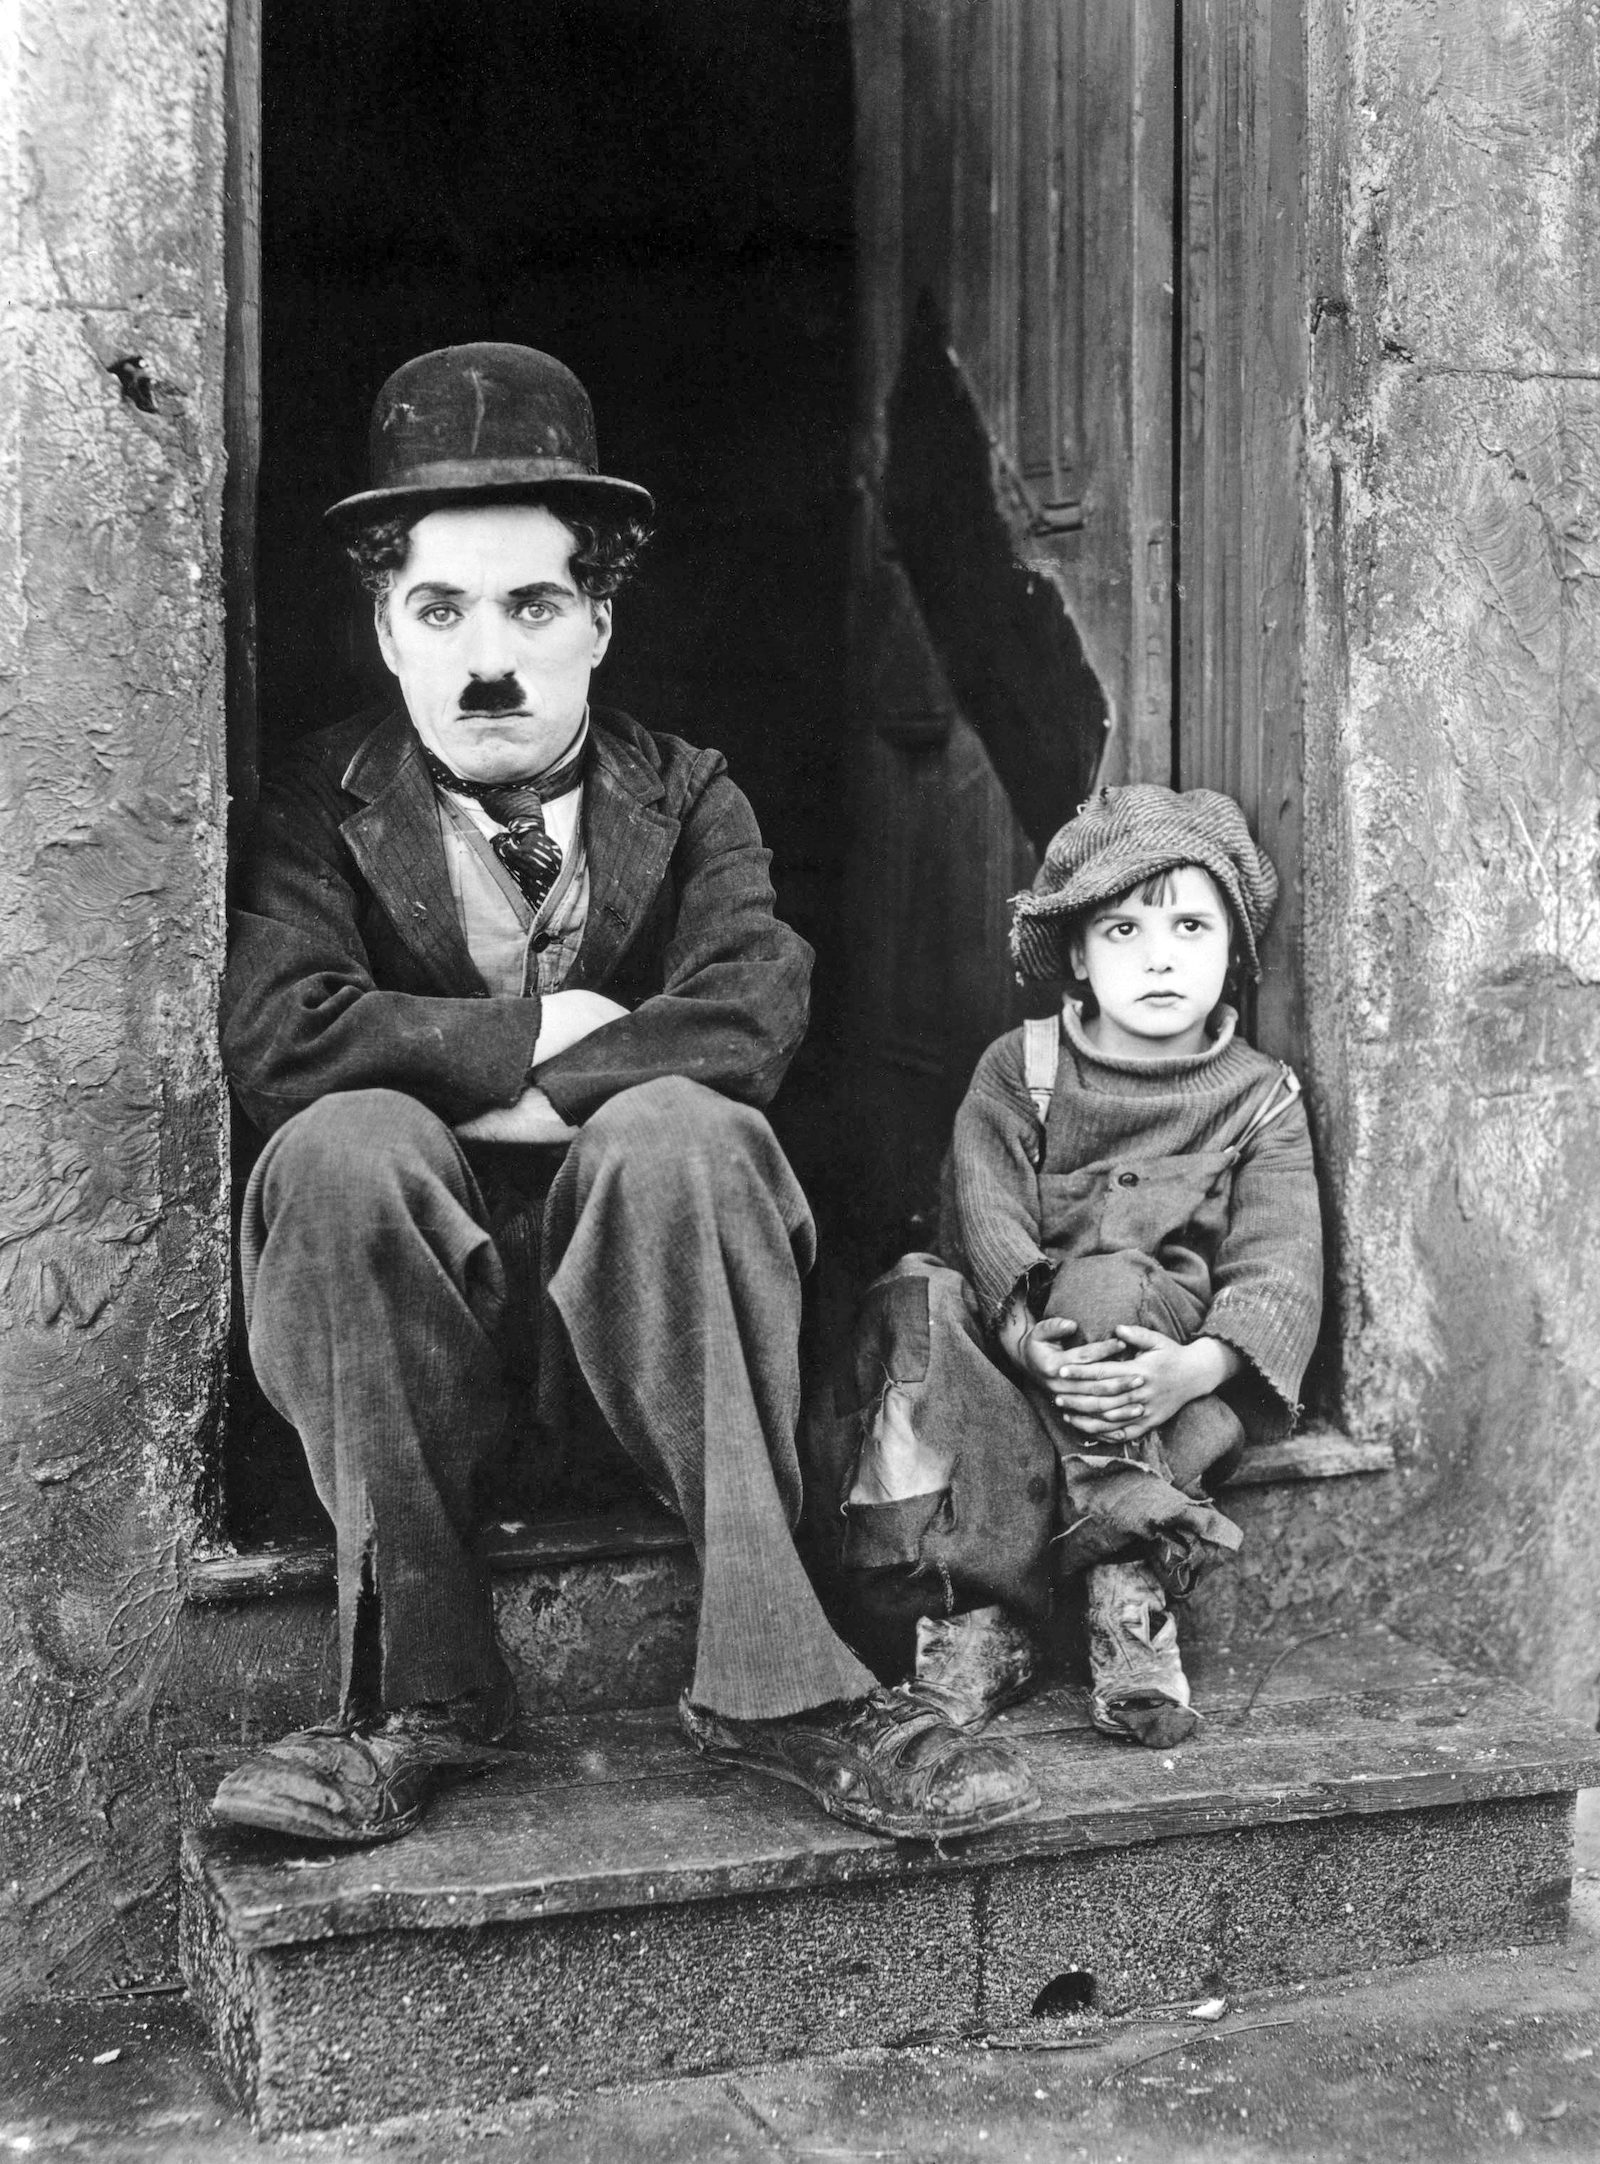 Jackie Coogan et Charlie Chaplin.  Photographie de publicité pour The Kid, 1921. Collection J. Willis Sayre de photographies théâtrales, Université de Washington.  Domaine public.